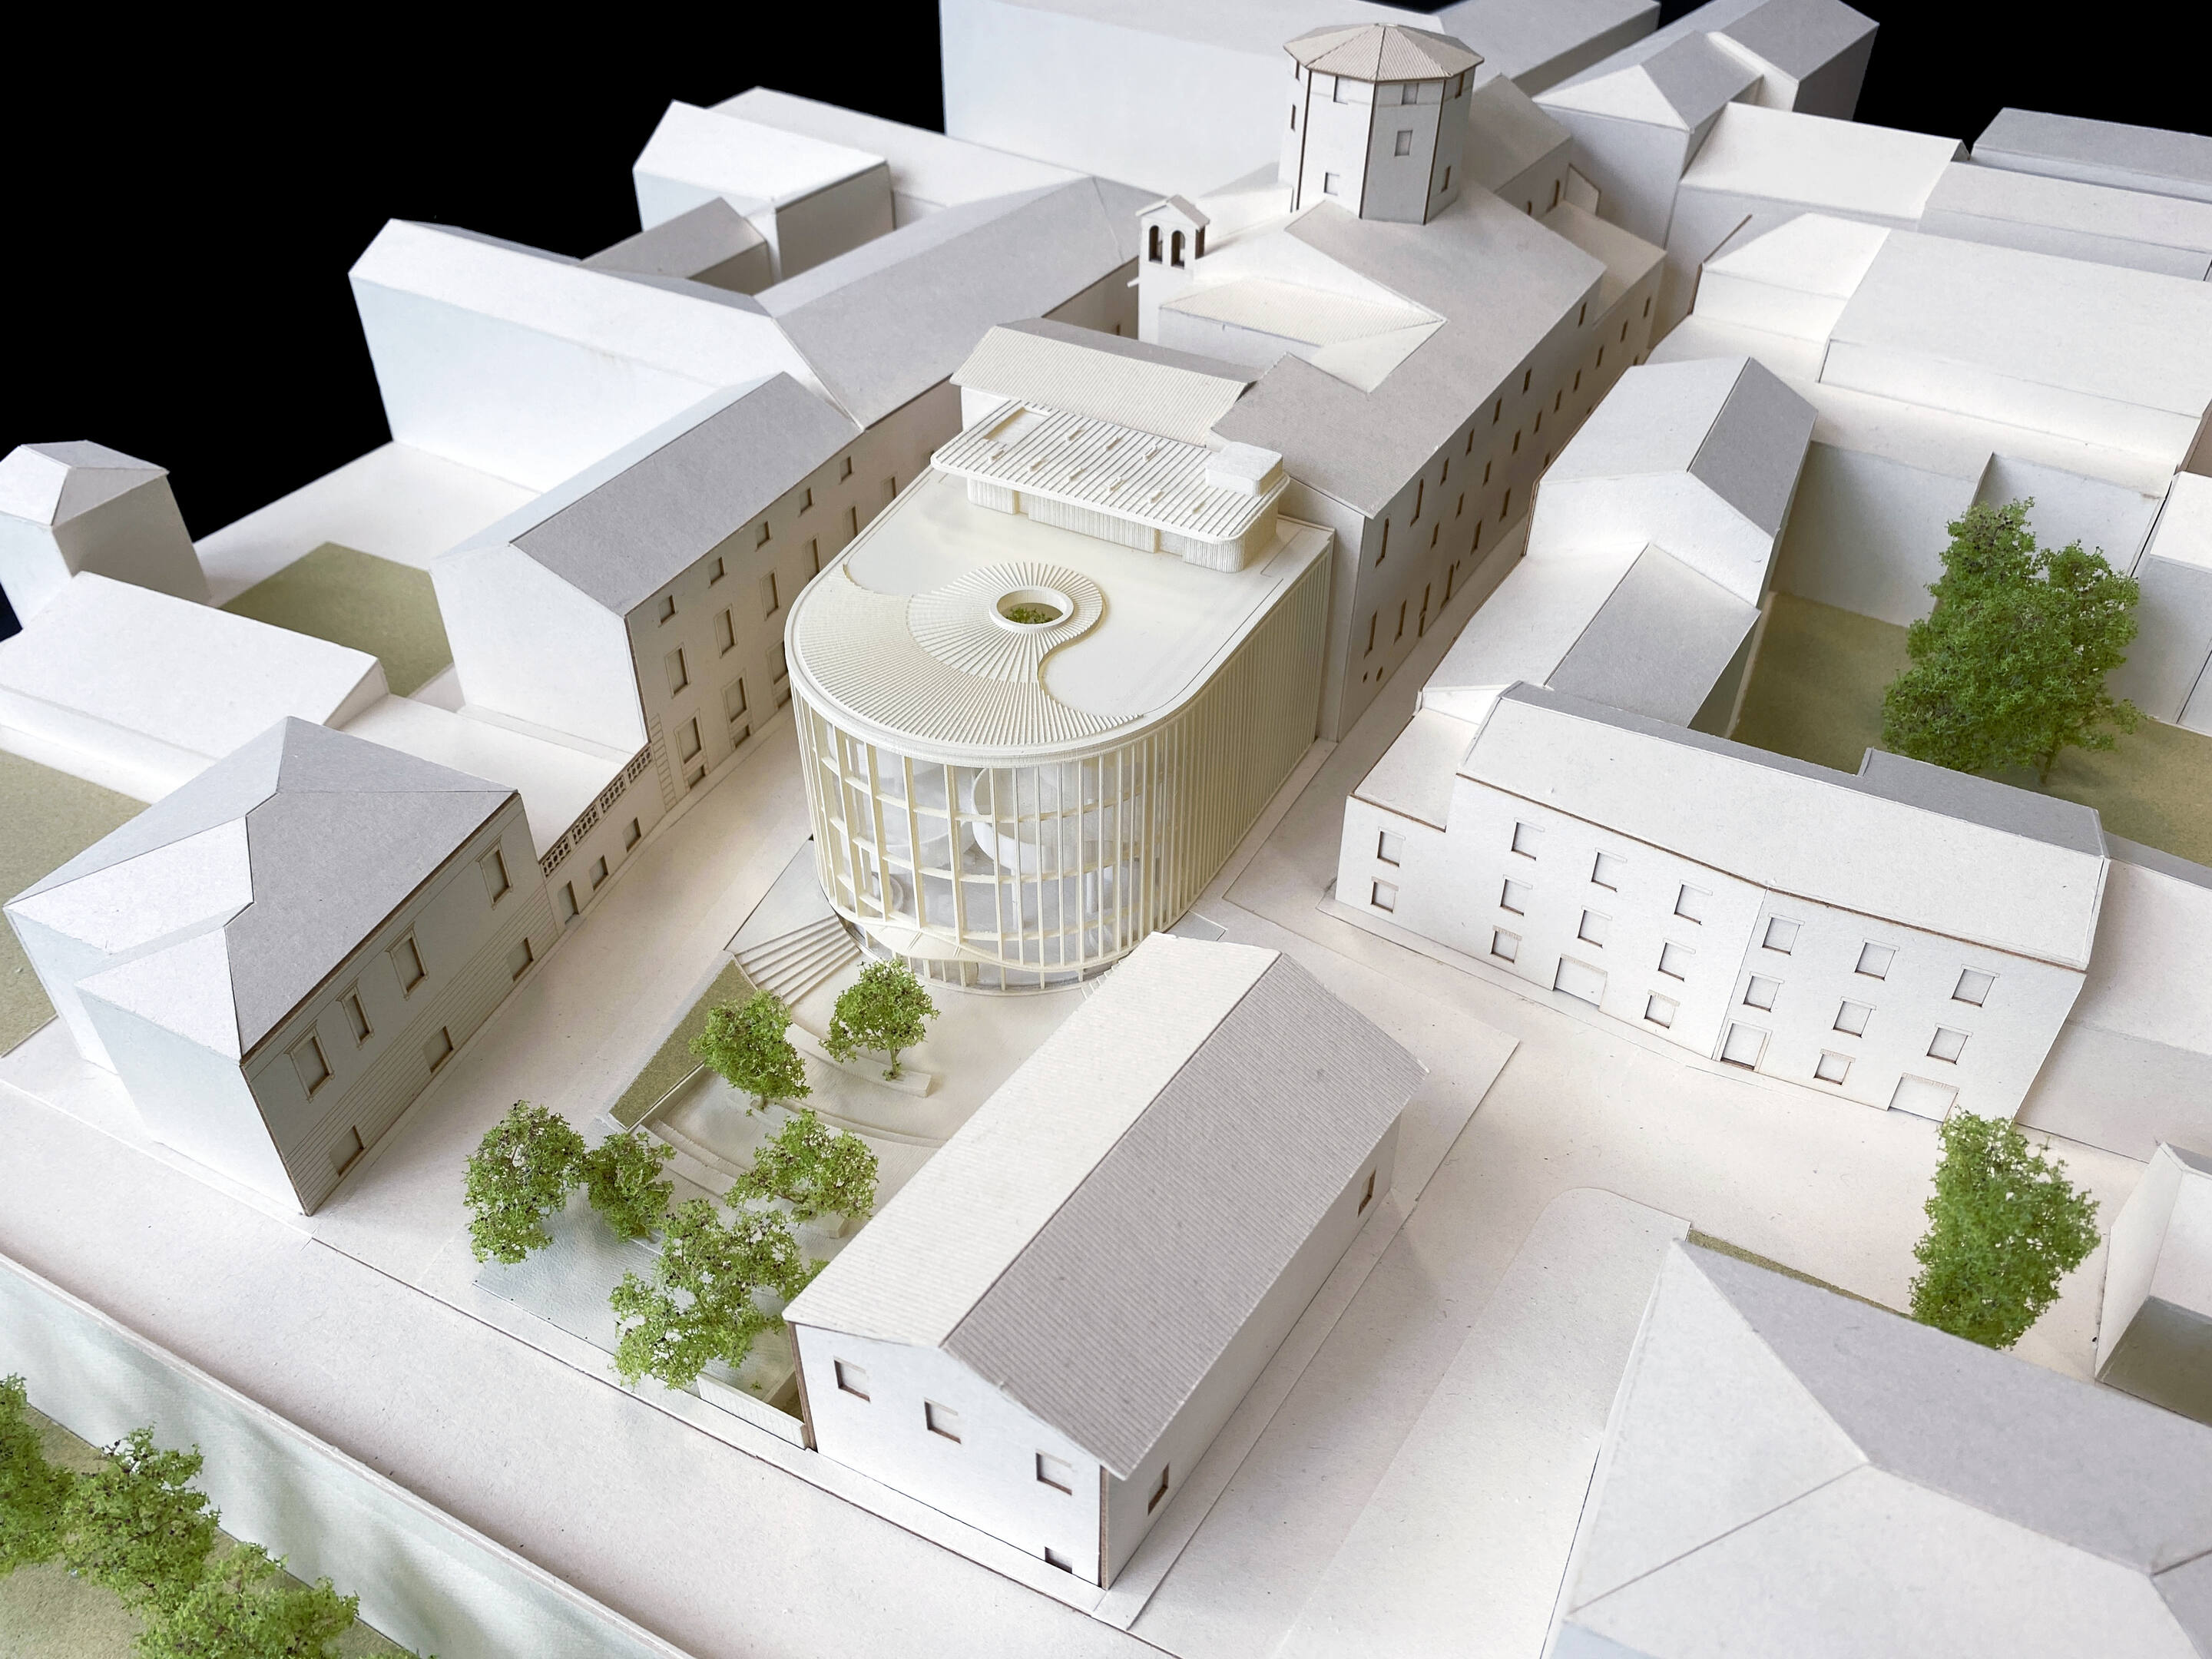 Approvato il progetto esecutivo della nuova Biblioteca Federiciana di Fano firmato Mario Cucinella Architects